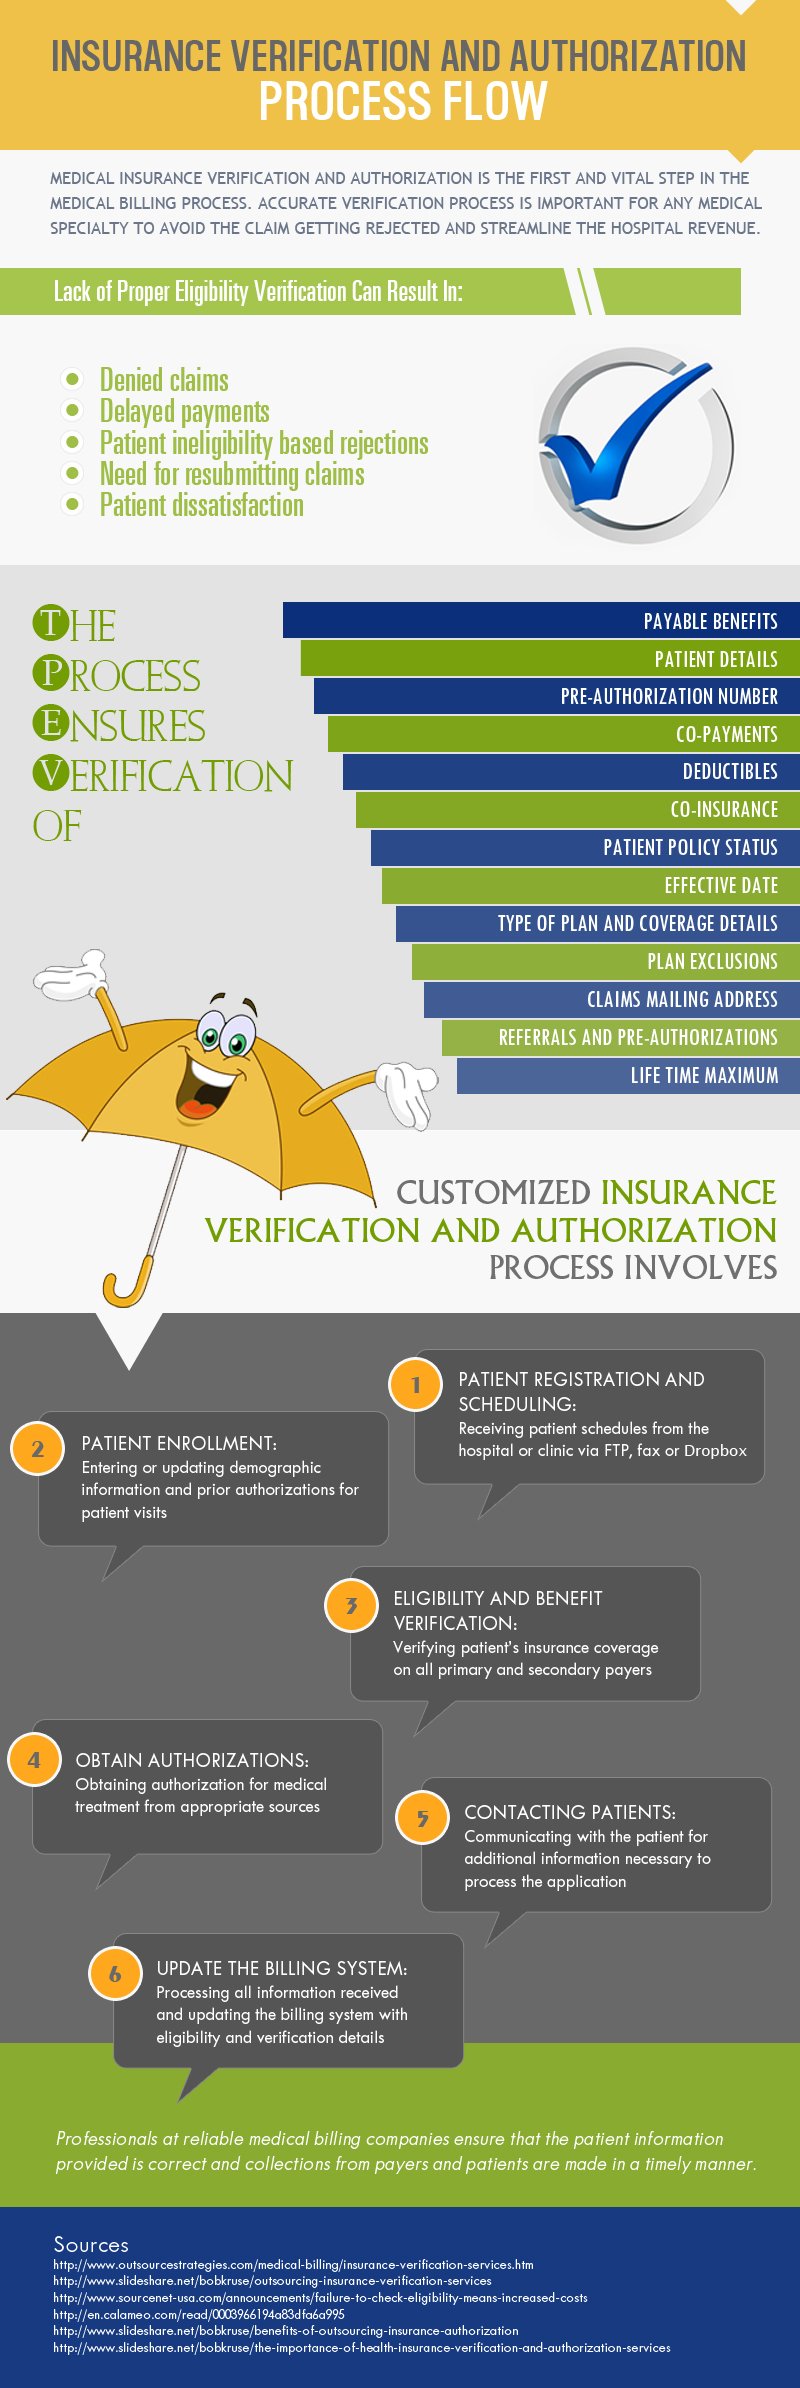 Insurance Verification Process Flow